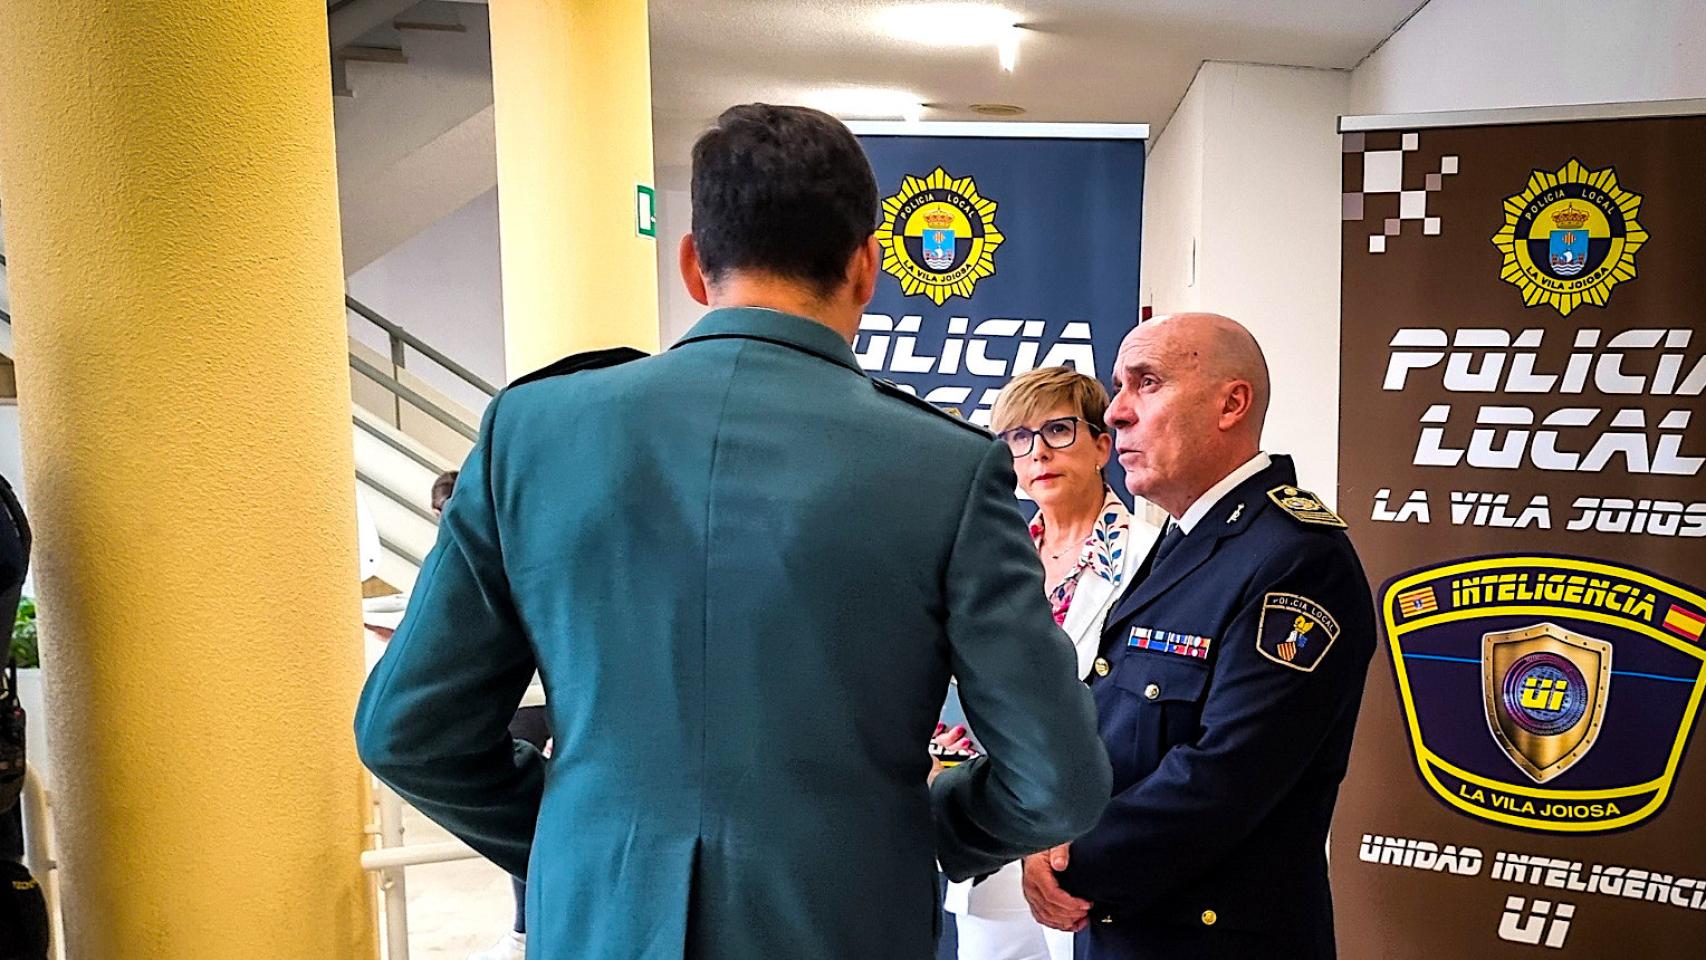 La concejala de Seguridad Isabel Perona y el intendente jefe José Álvarez atienden al comandante de la Guardia Civil que intervendrá en una ponencia.